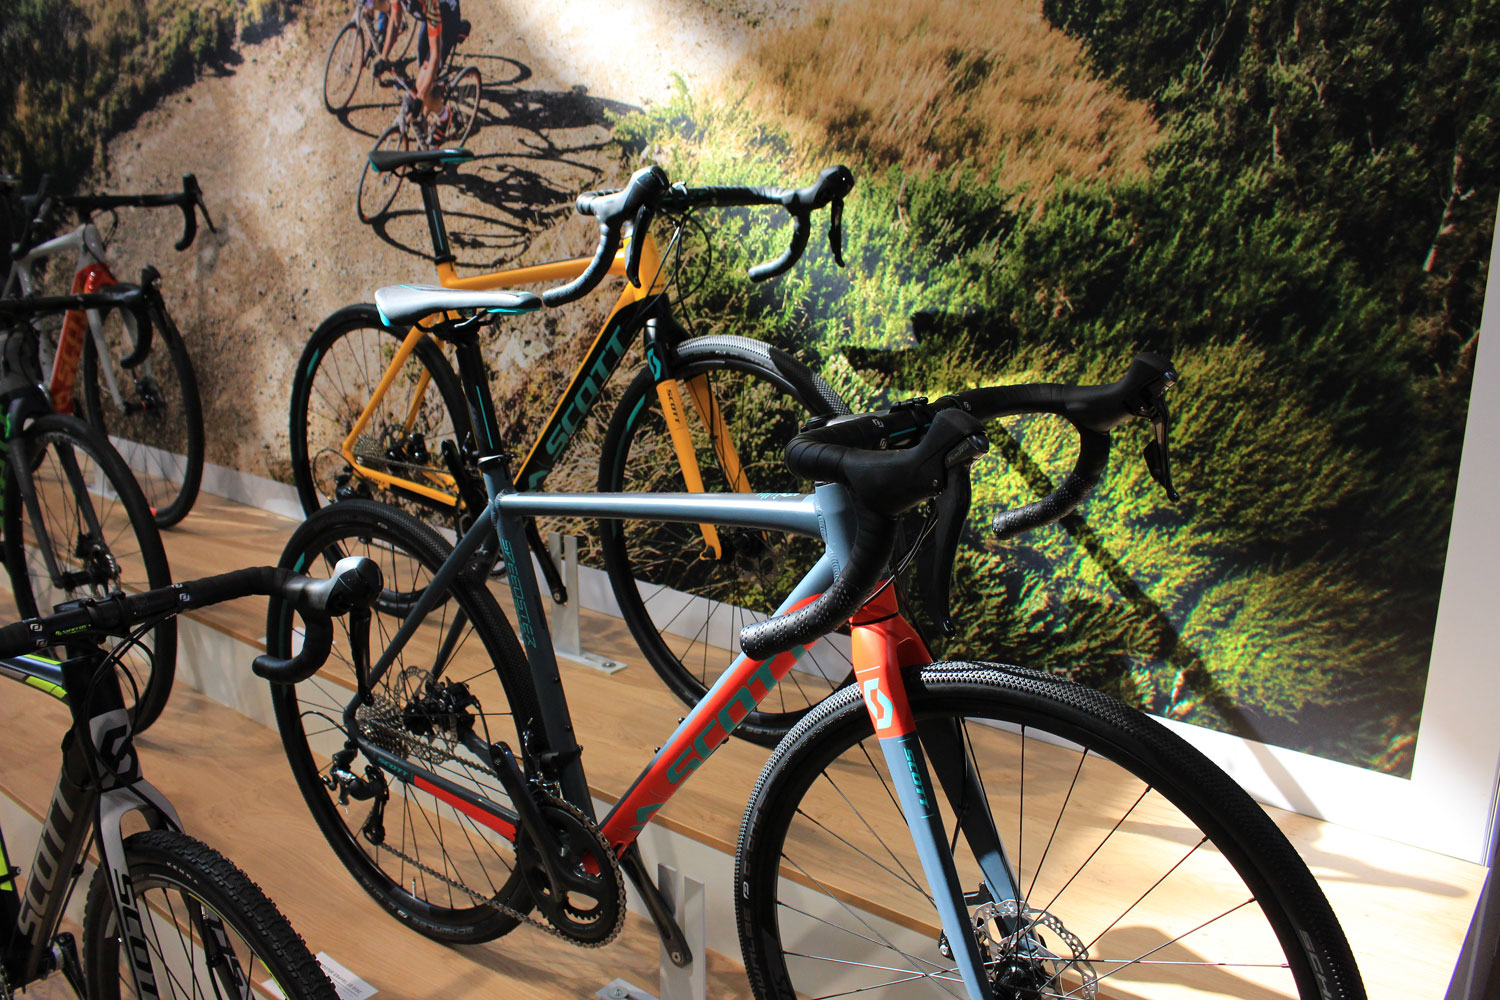 Comment choisir entre un vélo de route endurance et un vélo de gravel?